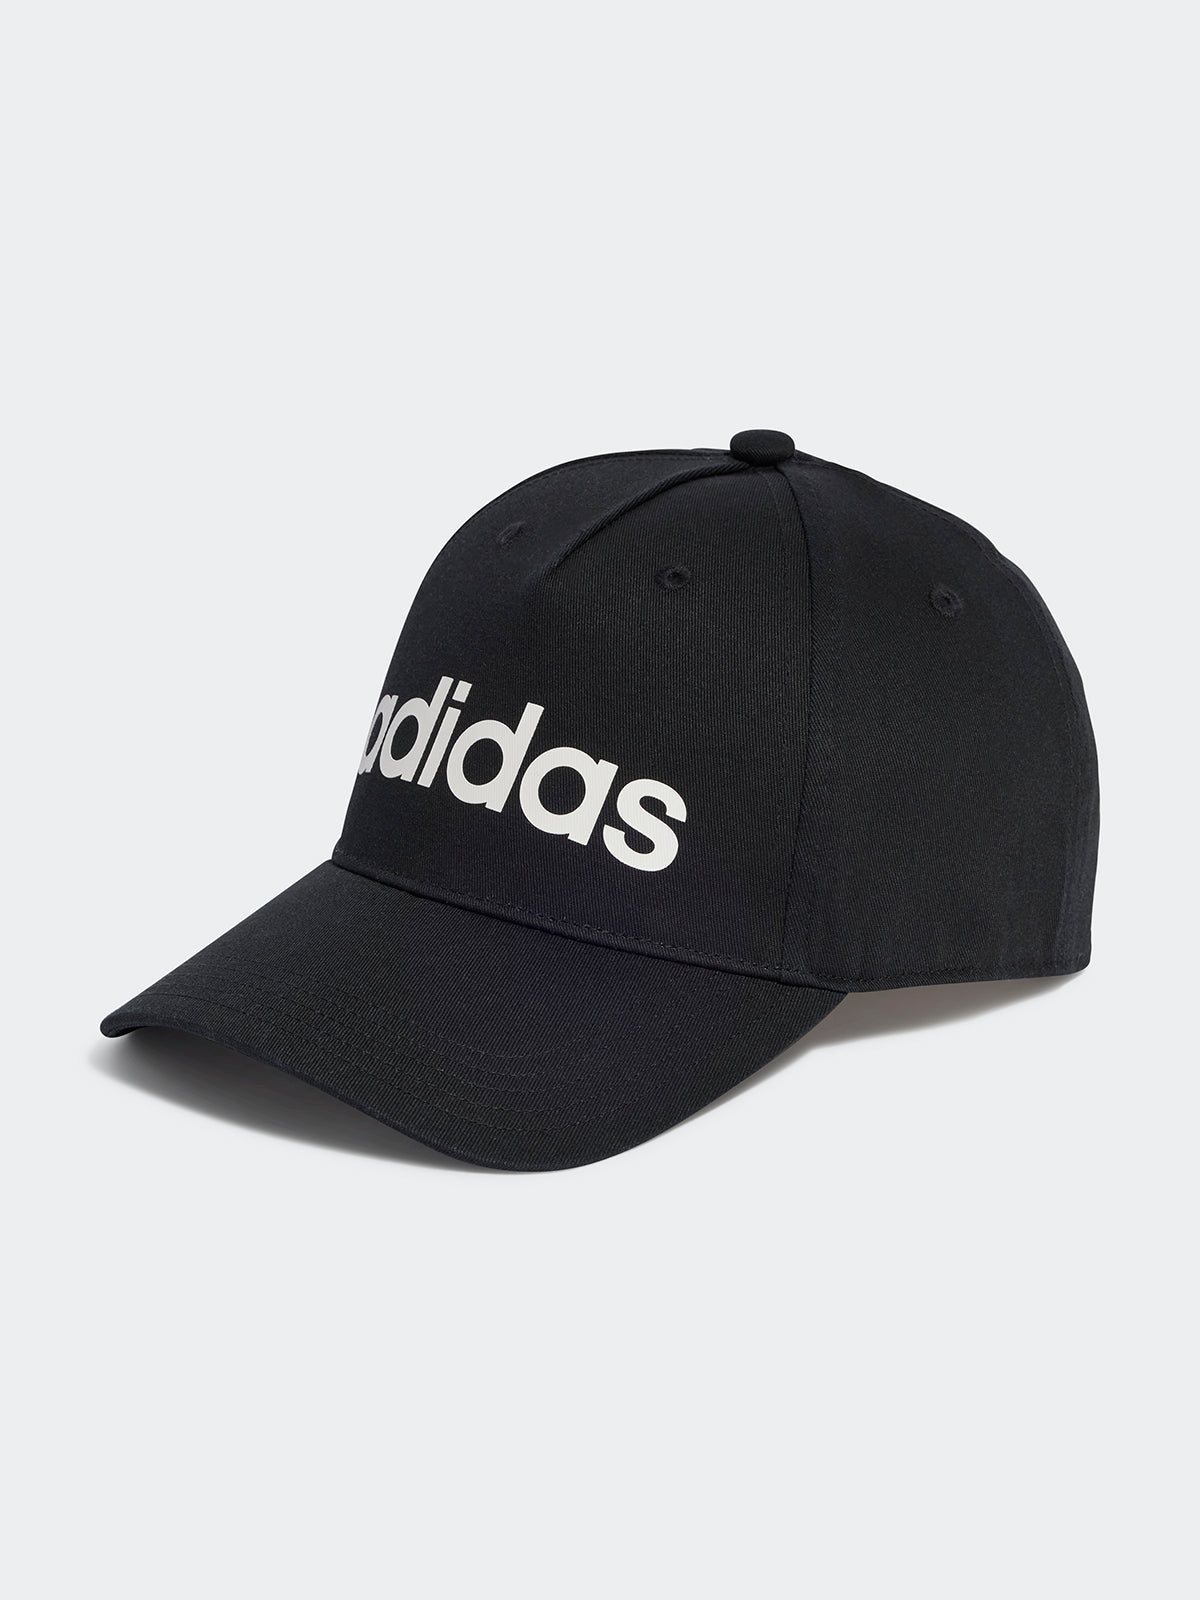 כובע עם הדפס לוגו / יוניסקס- adidas performance|אדידס פרפורמנס